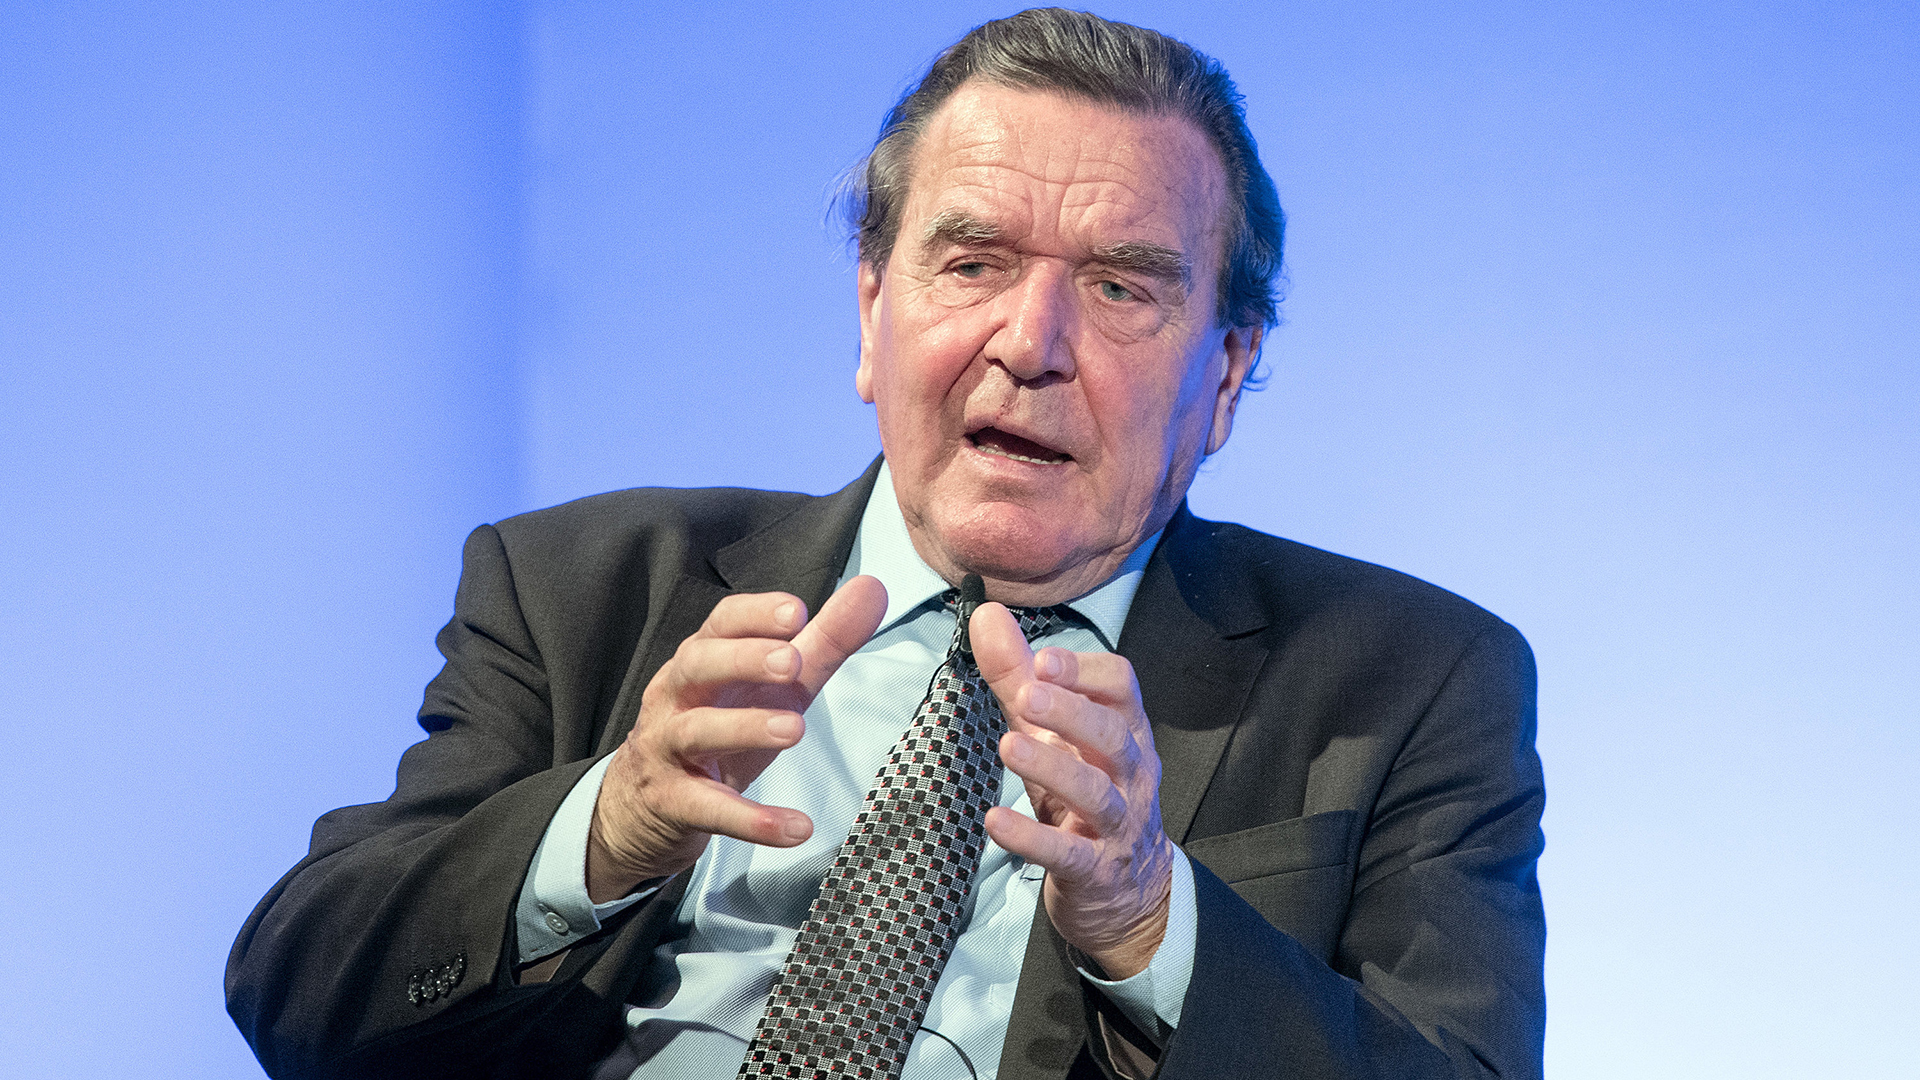 Der ehemalige Bundeskanzler Gerhard Schröder bei einer Veranstaltung in Mönchengladbach.  | dpa